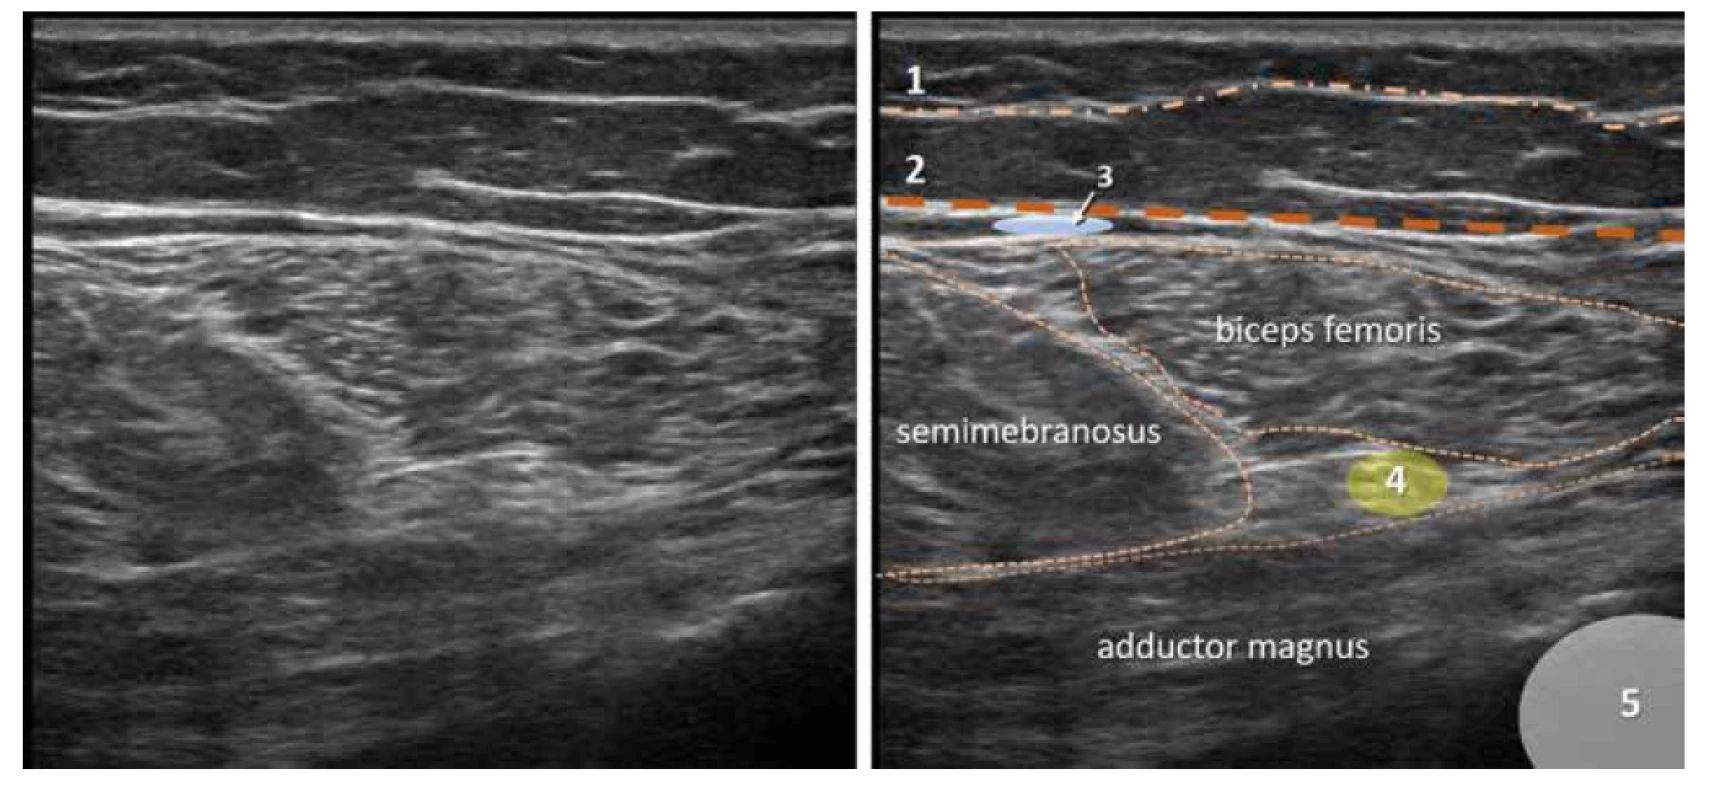 Nativní a kolorovaný ultrazvukový obraz zadní proximální části stehna. 1. povrchní fascie, 2. fascia lata, 3. místo pro aplikaci lokálního anestetika
pro blokádu NCFP, 4. n. ischiadicus, 5. femur